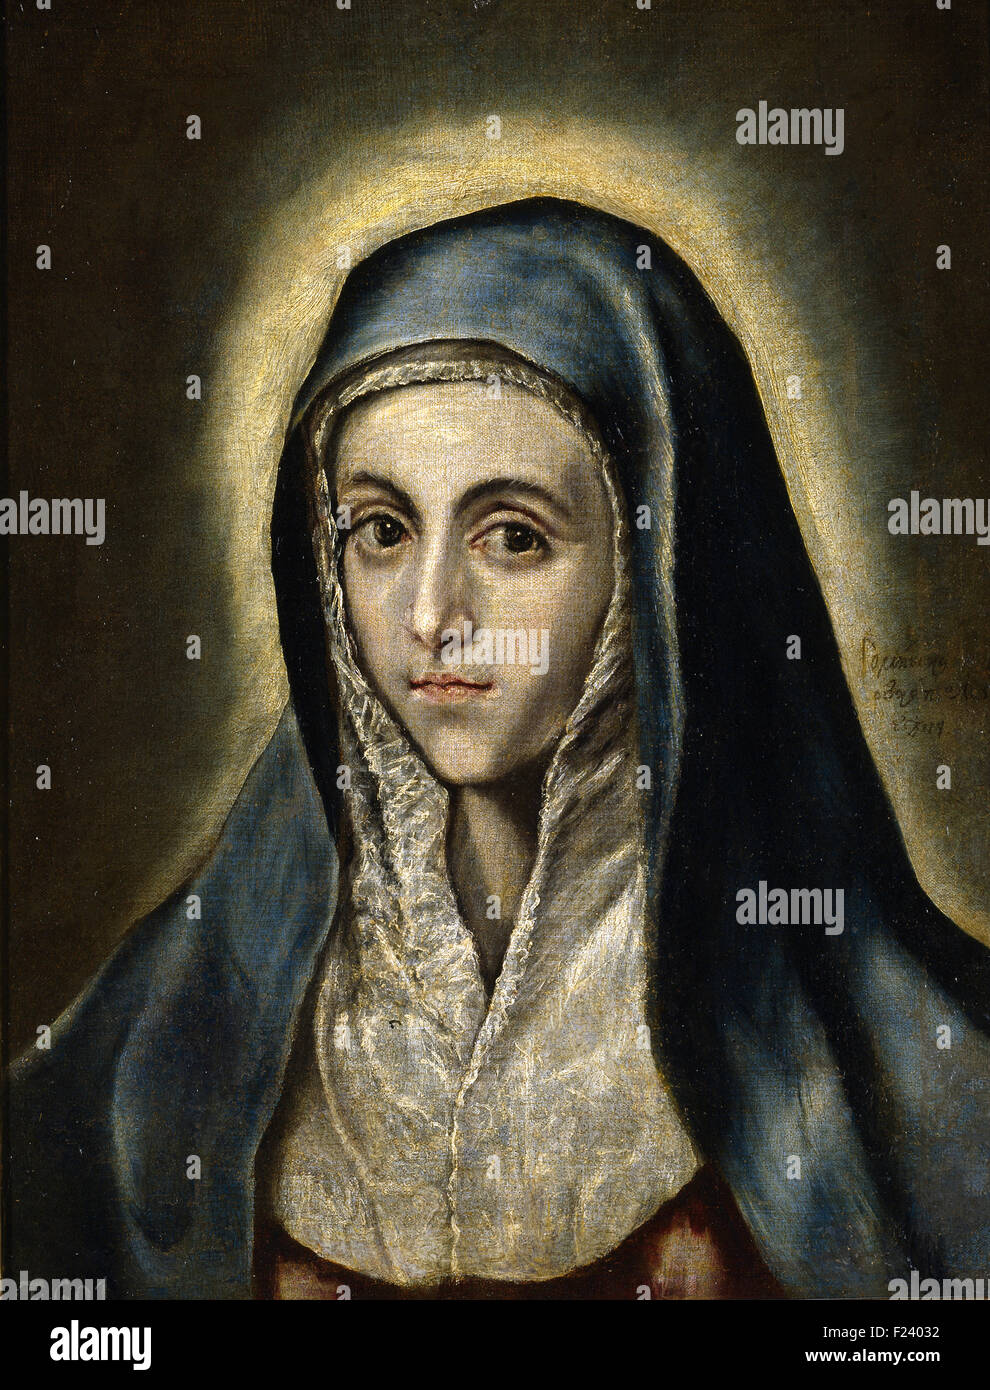 El Greco - The Virgin Mary Stock Photo